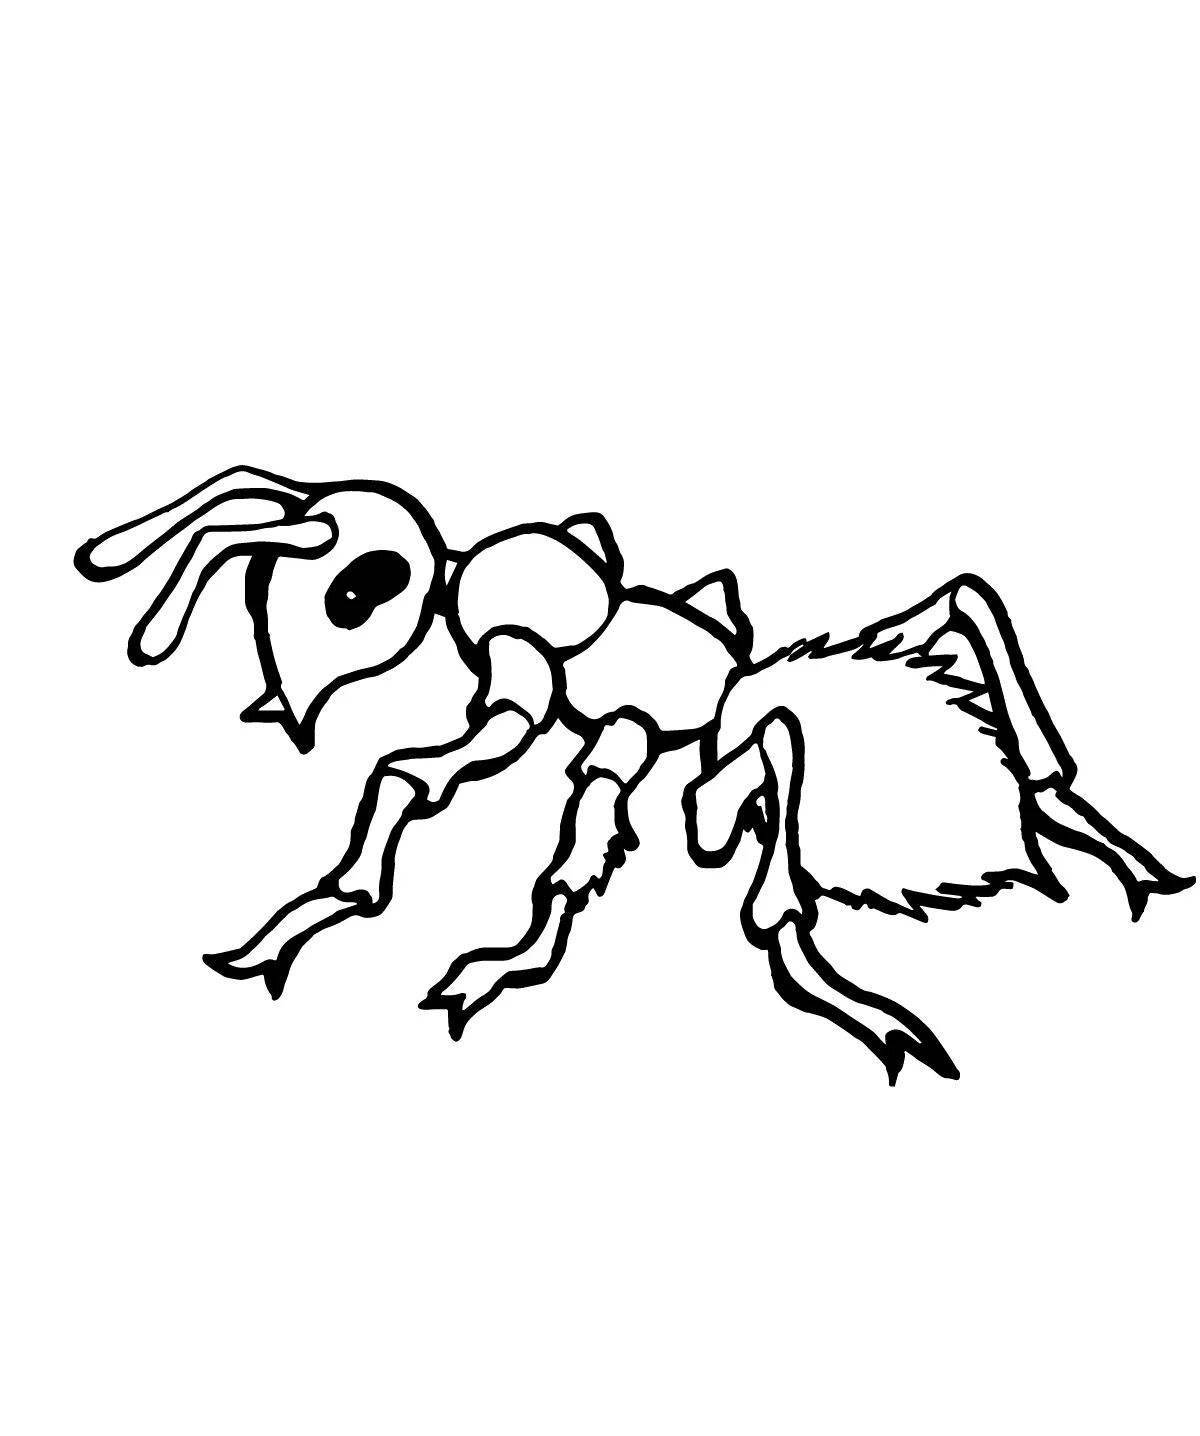 Игривый рисунок муравья